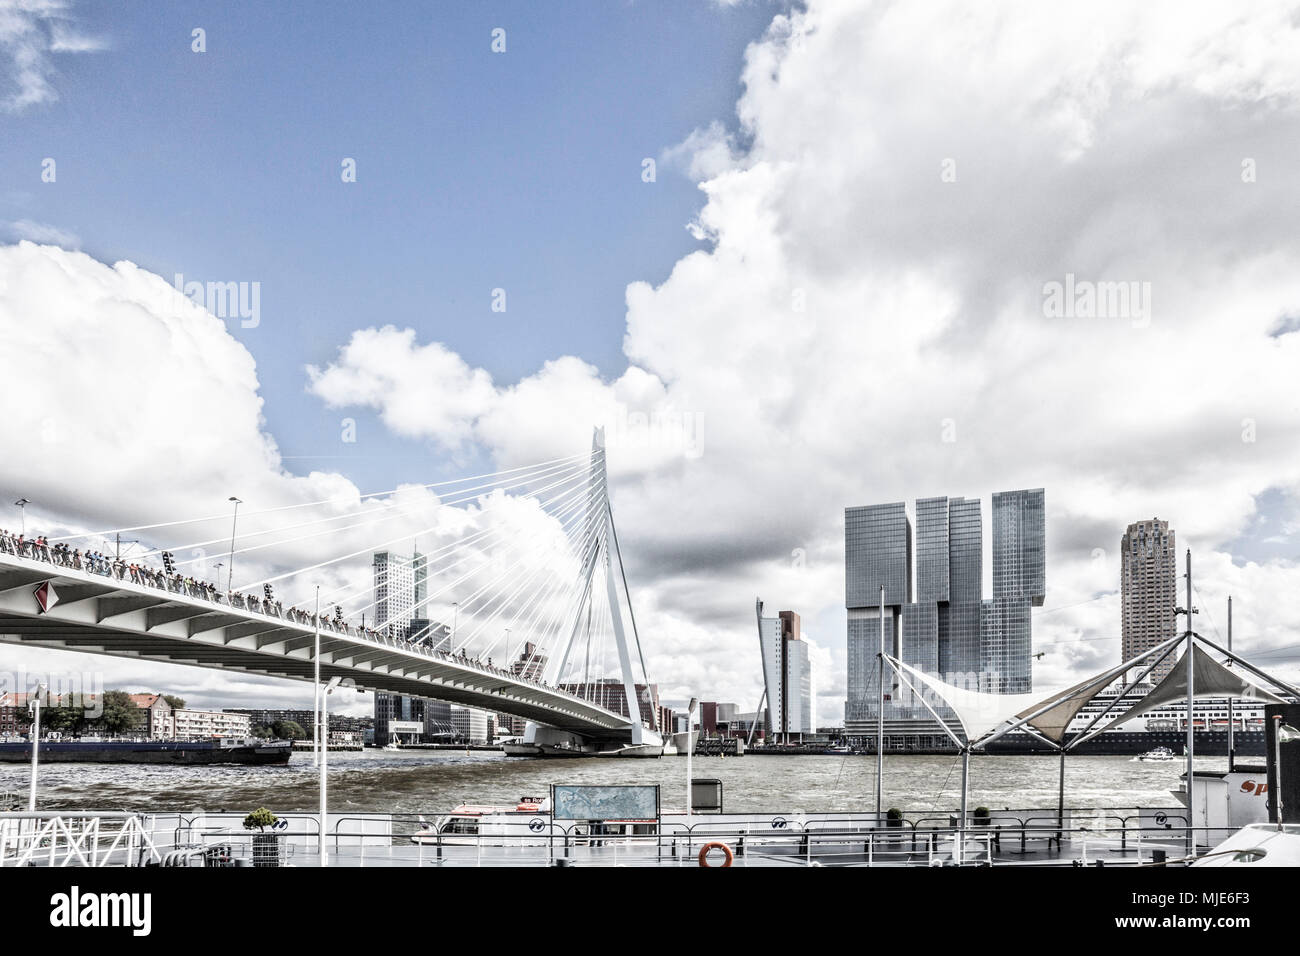 Erasmusbrücke mit vielen Menschen a Rotterdam Foto Stock